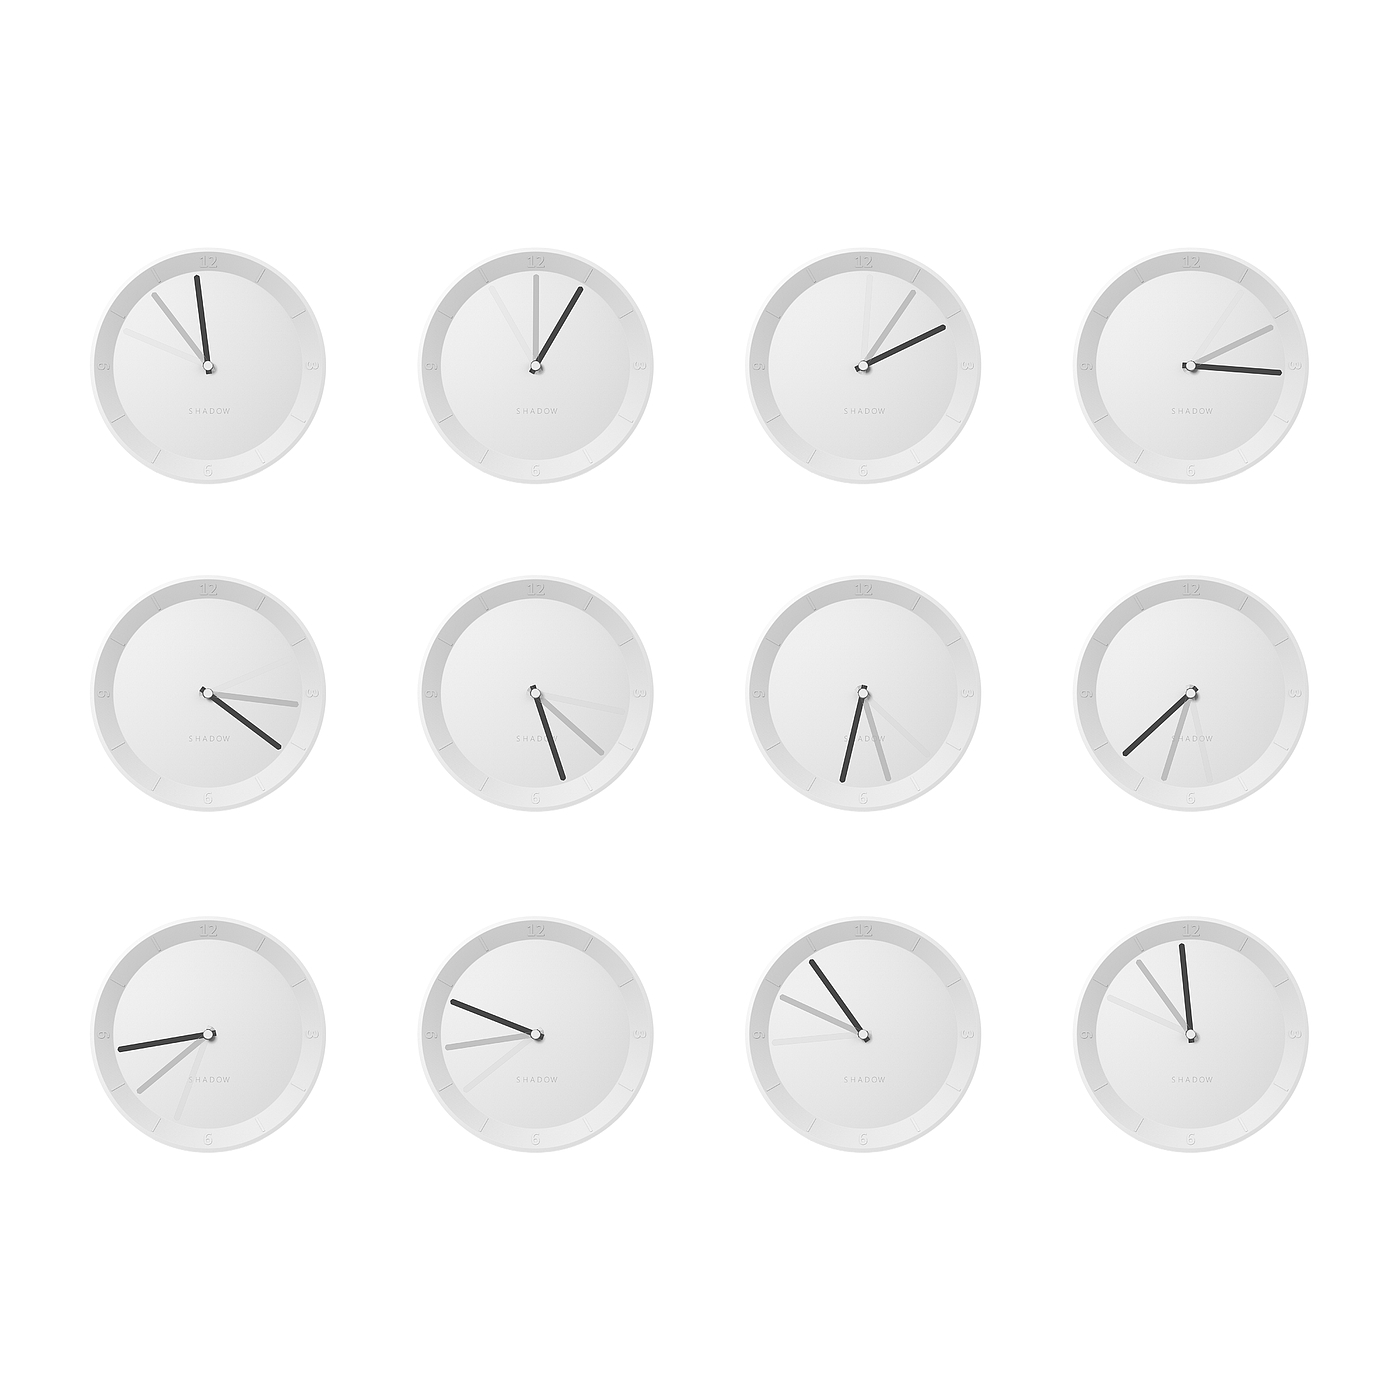 时钟，钟，钟表，产品设计，创意，灵感，clock，时钟设计，